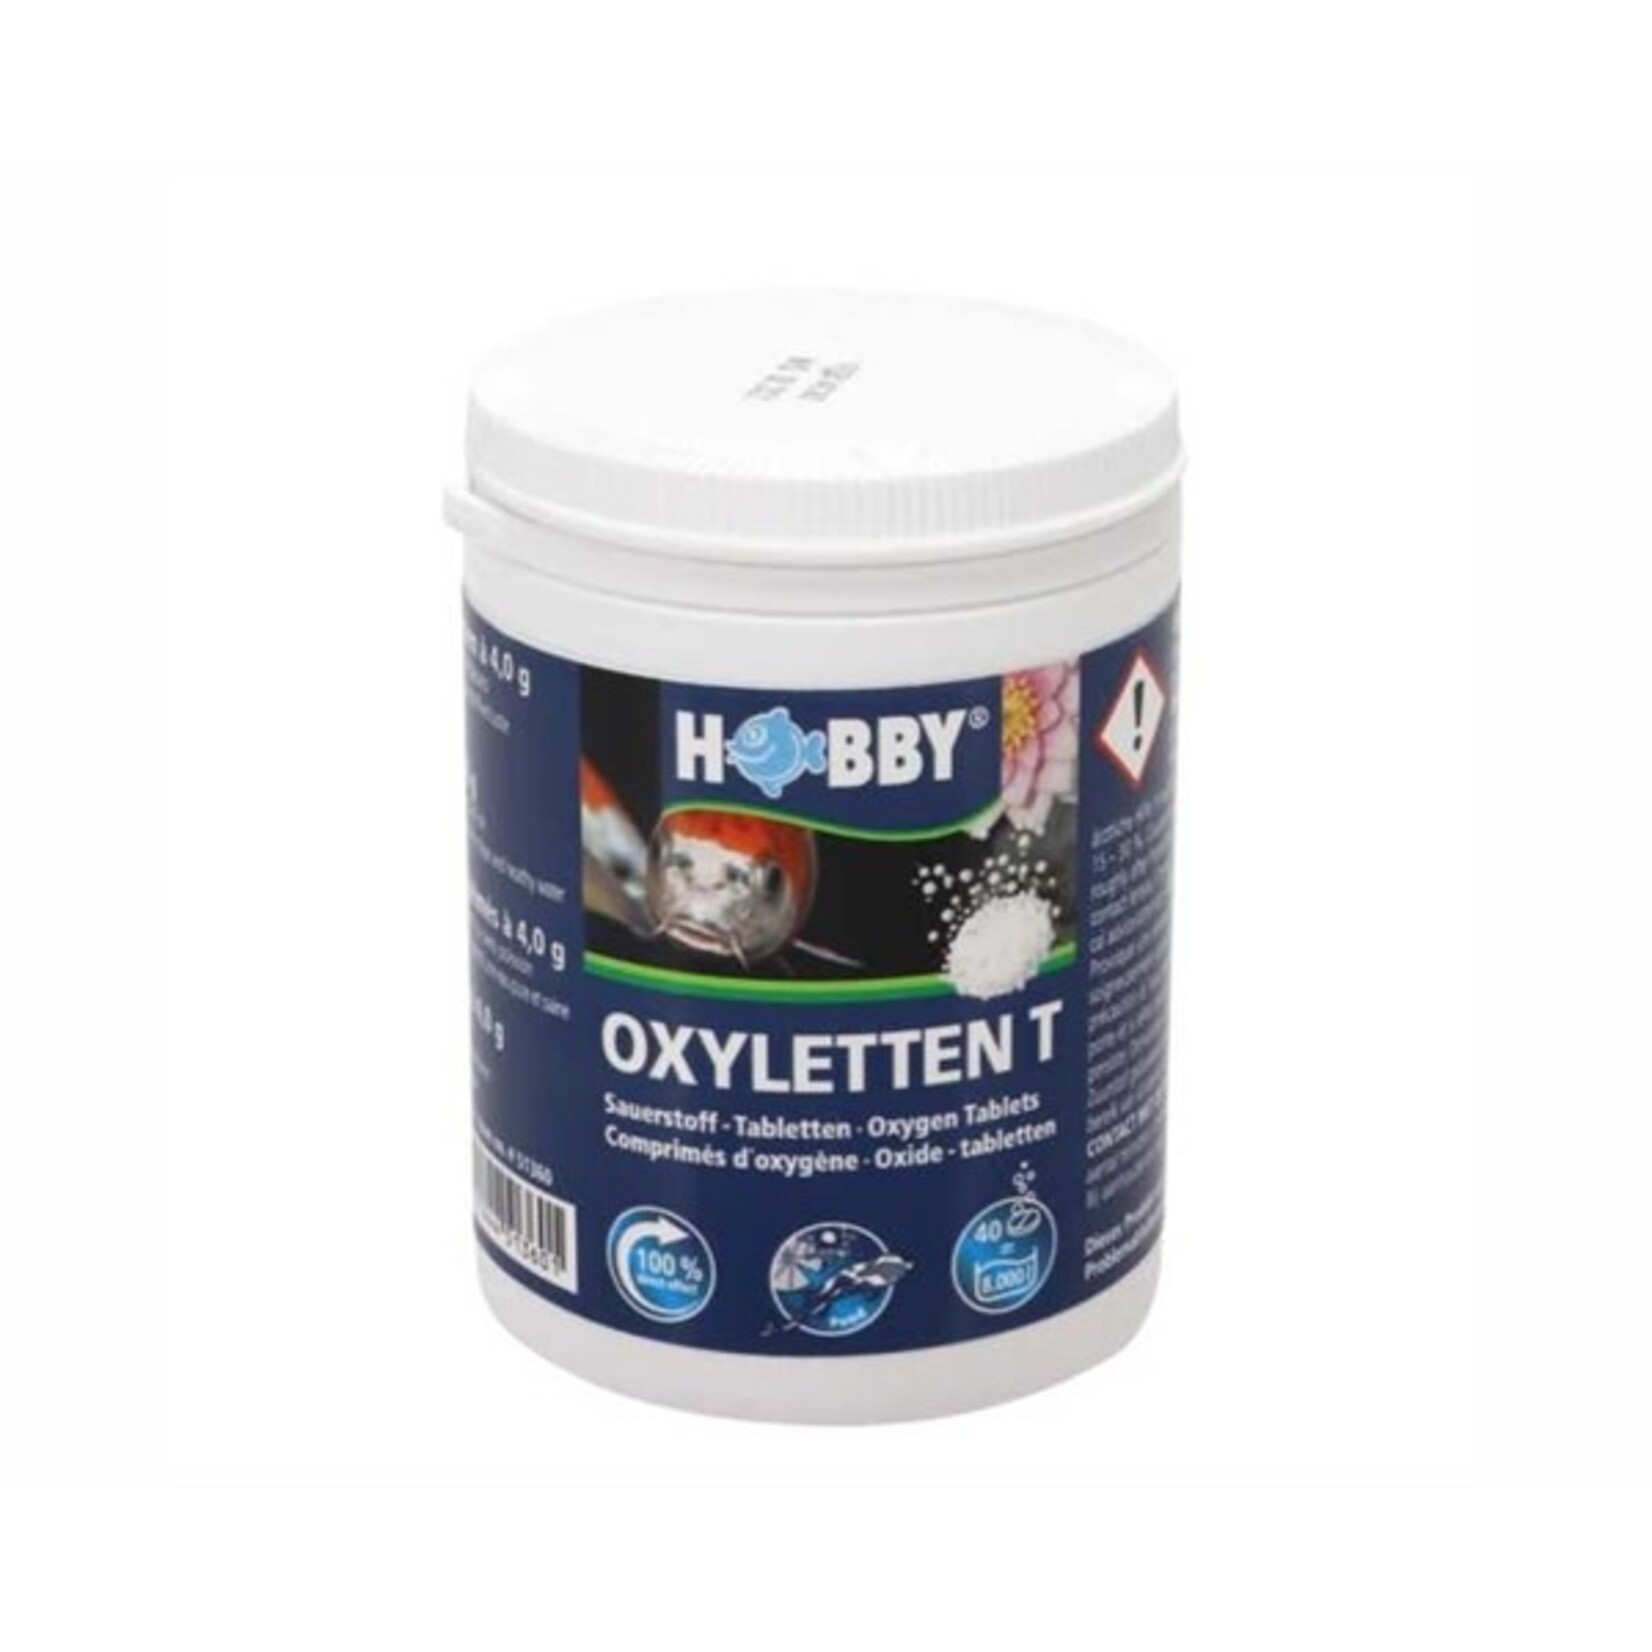 Hobby Oxylets t-oxygen tablet